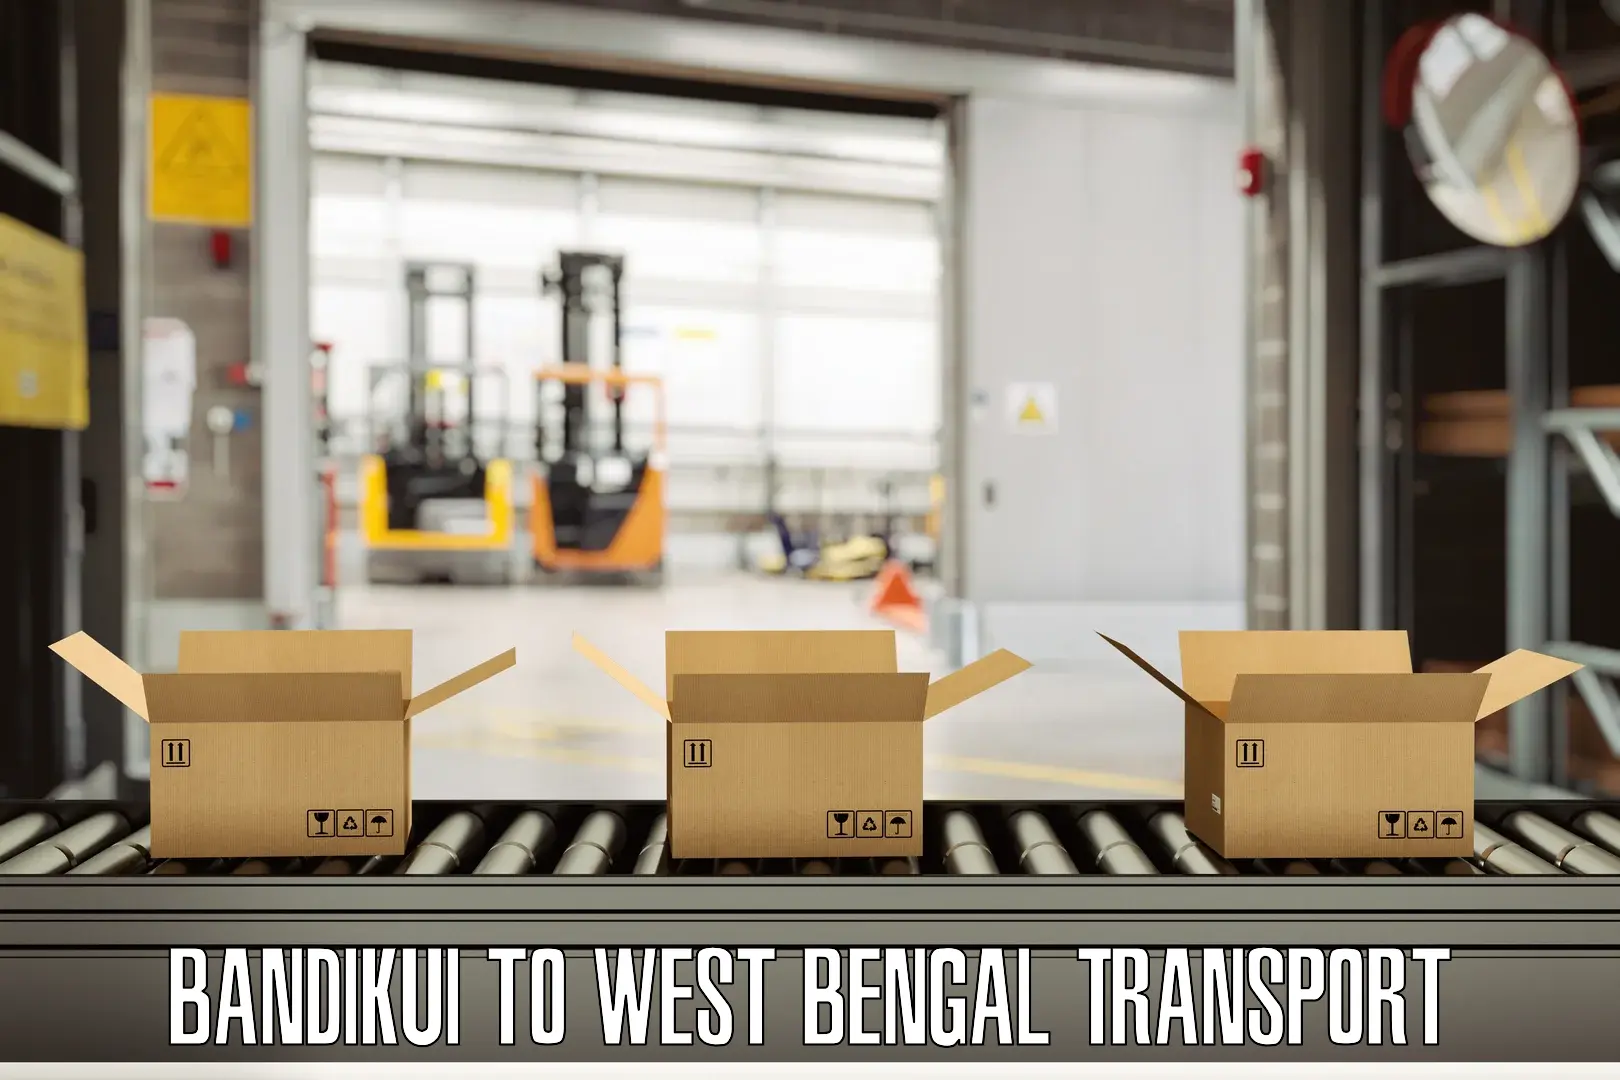 Pick up transport service in Bandikui to Manglamaro